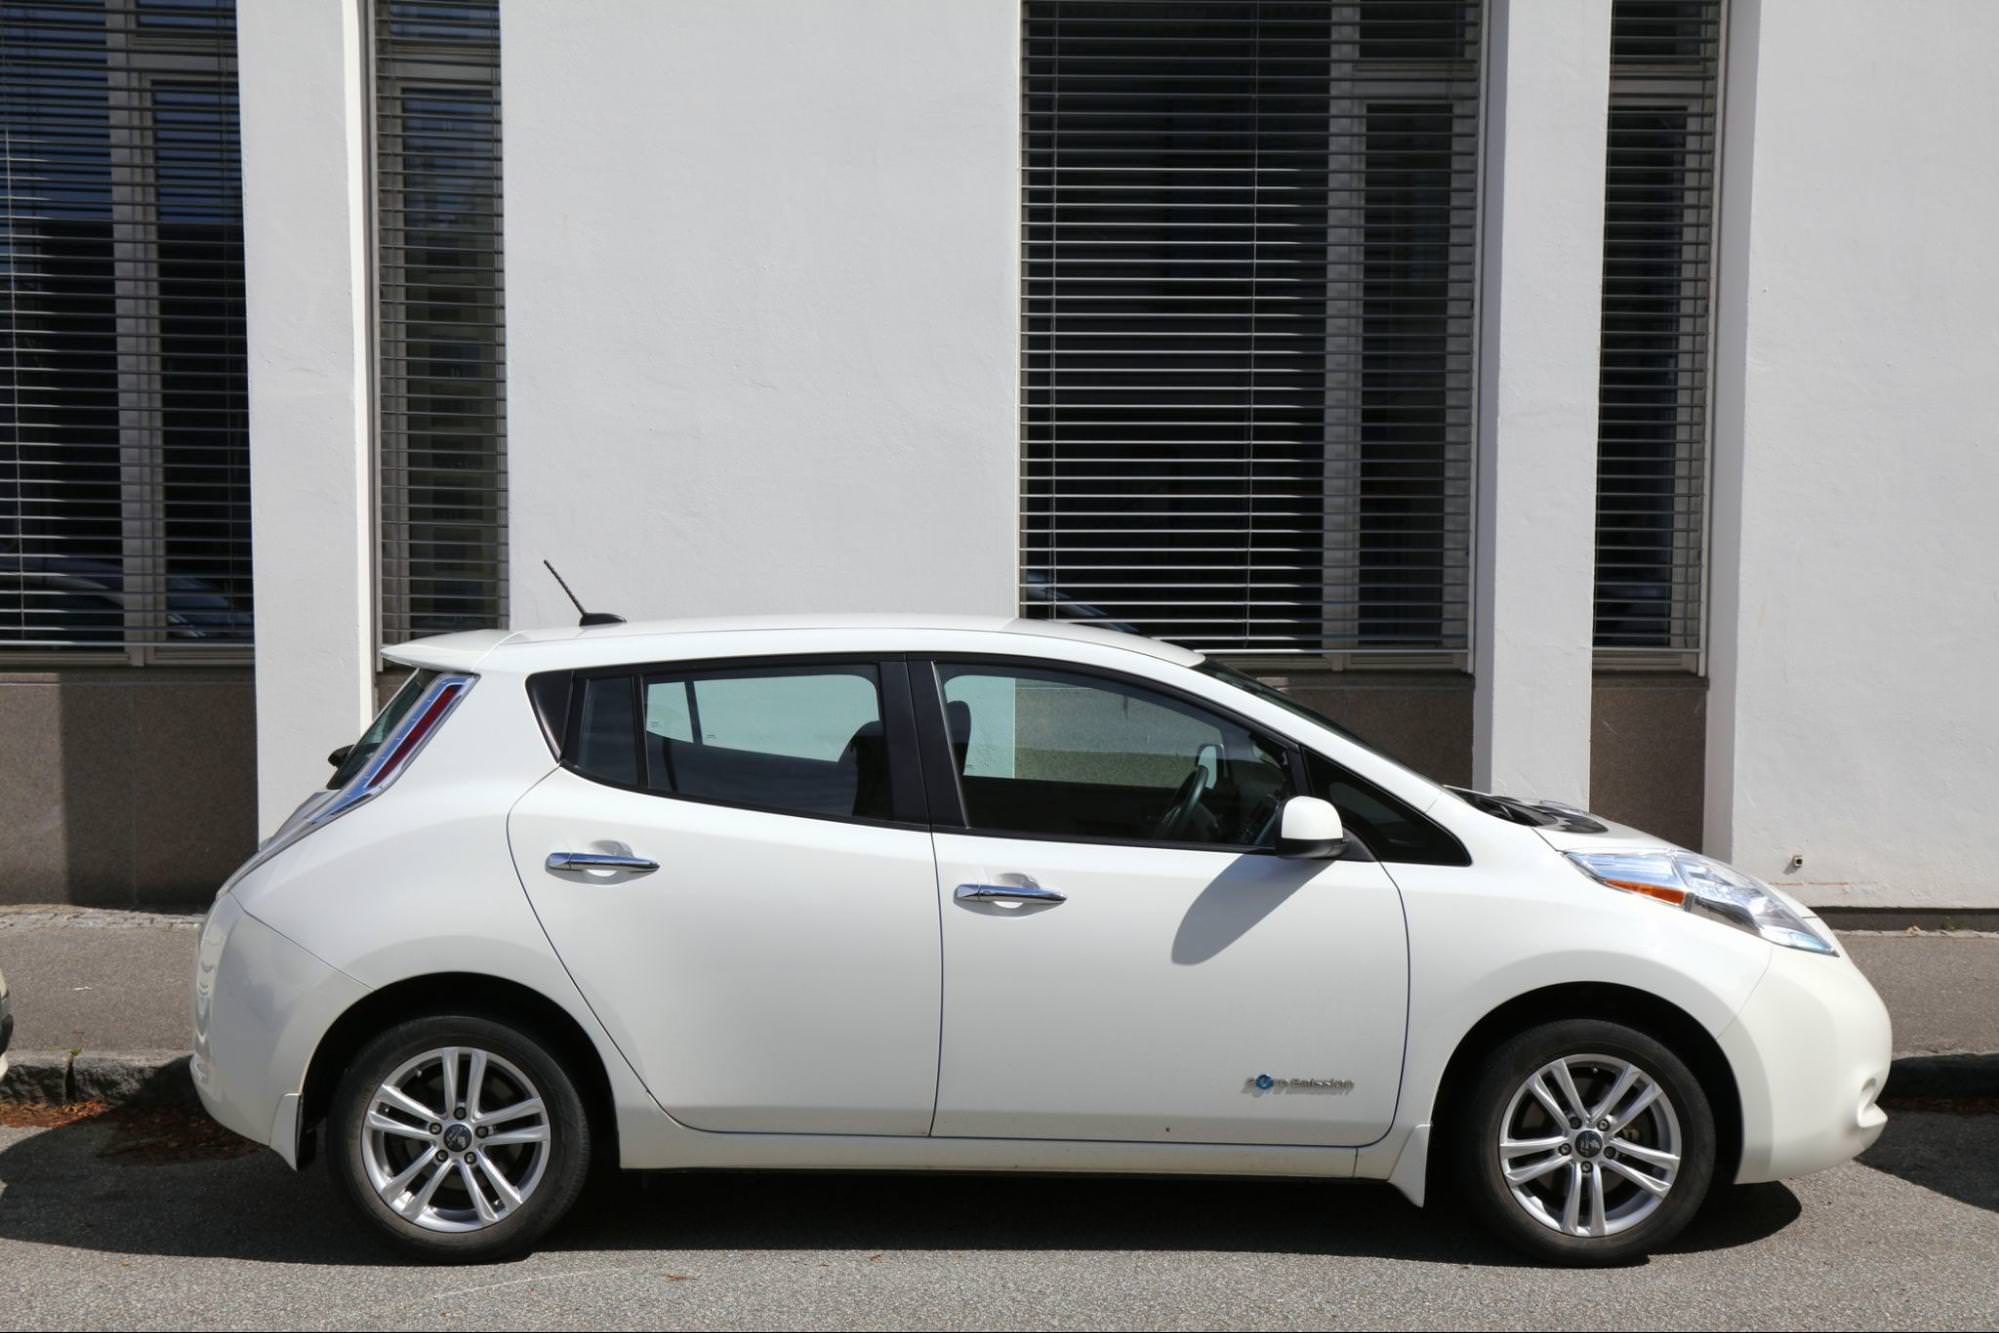 Elektryczny kompaktowy samochód Nissan Leaf o zerowej emisji, zaparkowany na ulicy